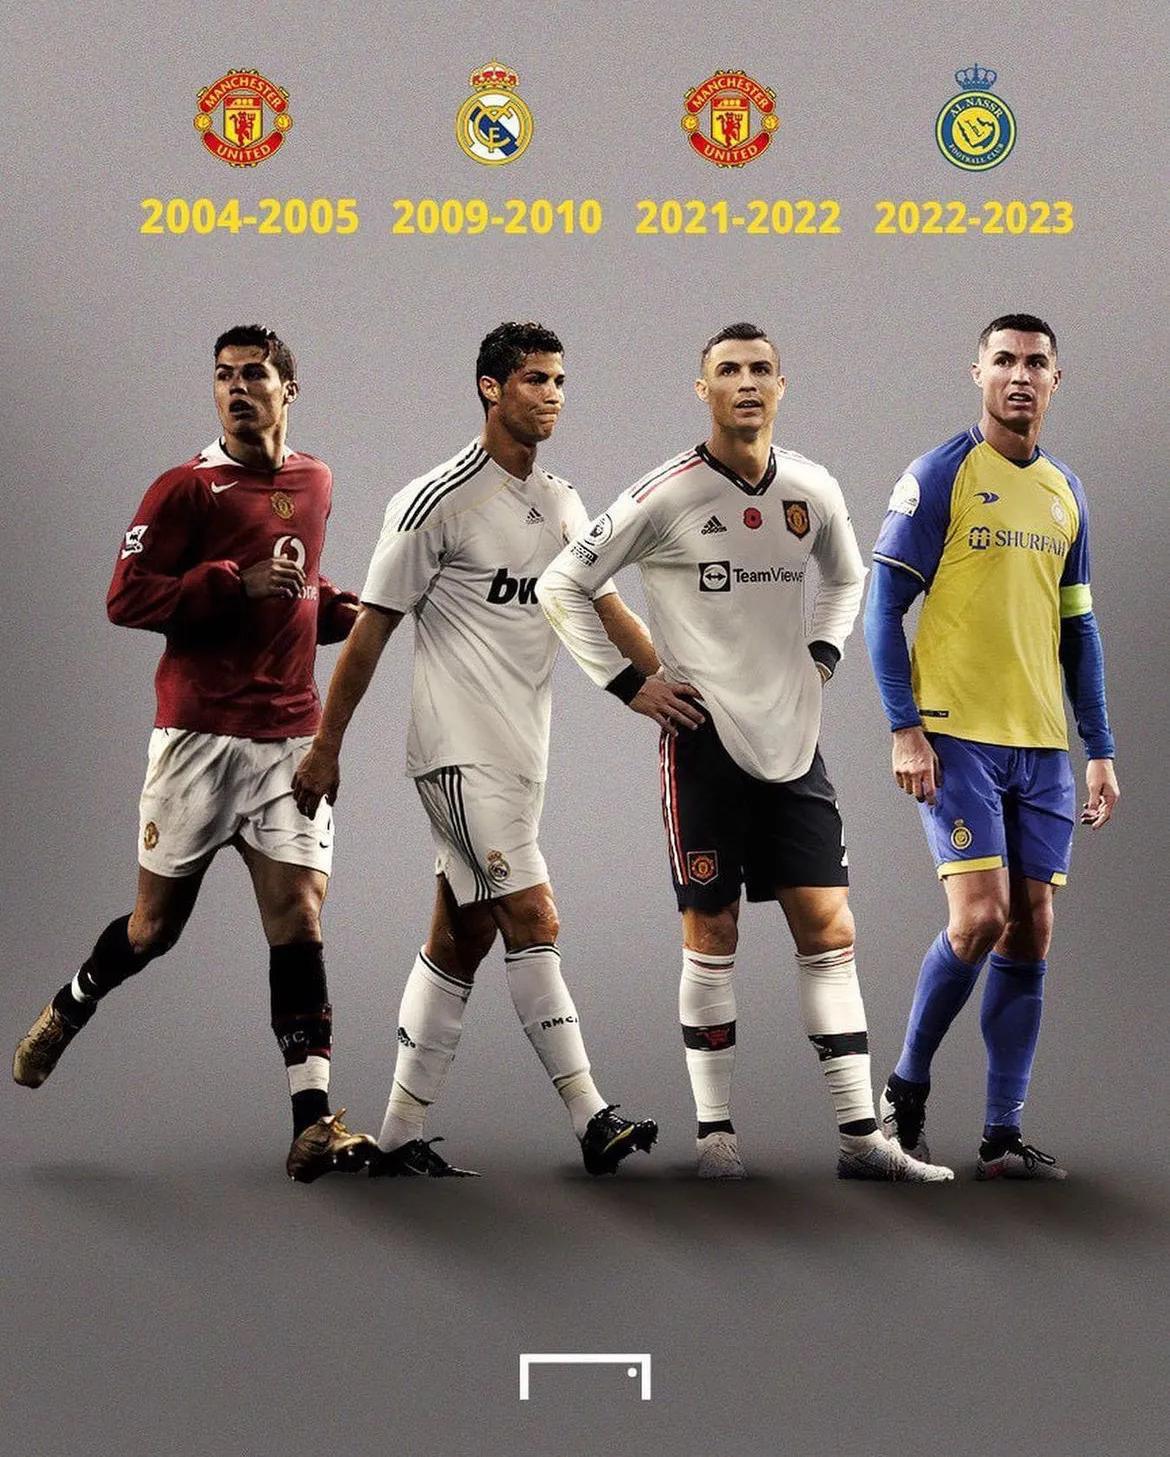 C罗职业生涯经历的4个四大皆空赛季

曼联（2004-05赛季）
皇马（2009